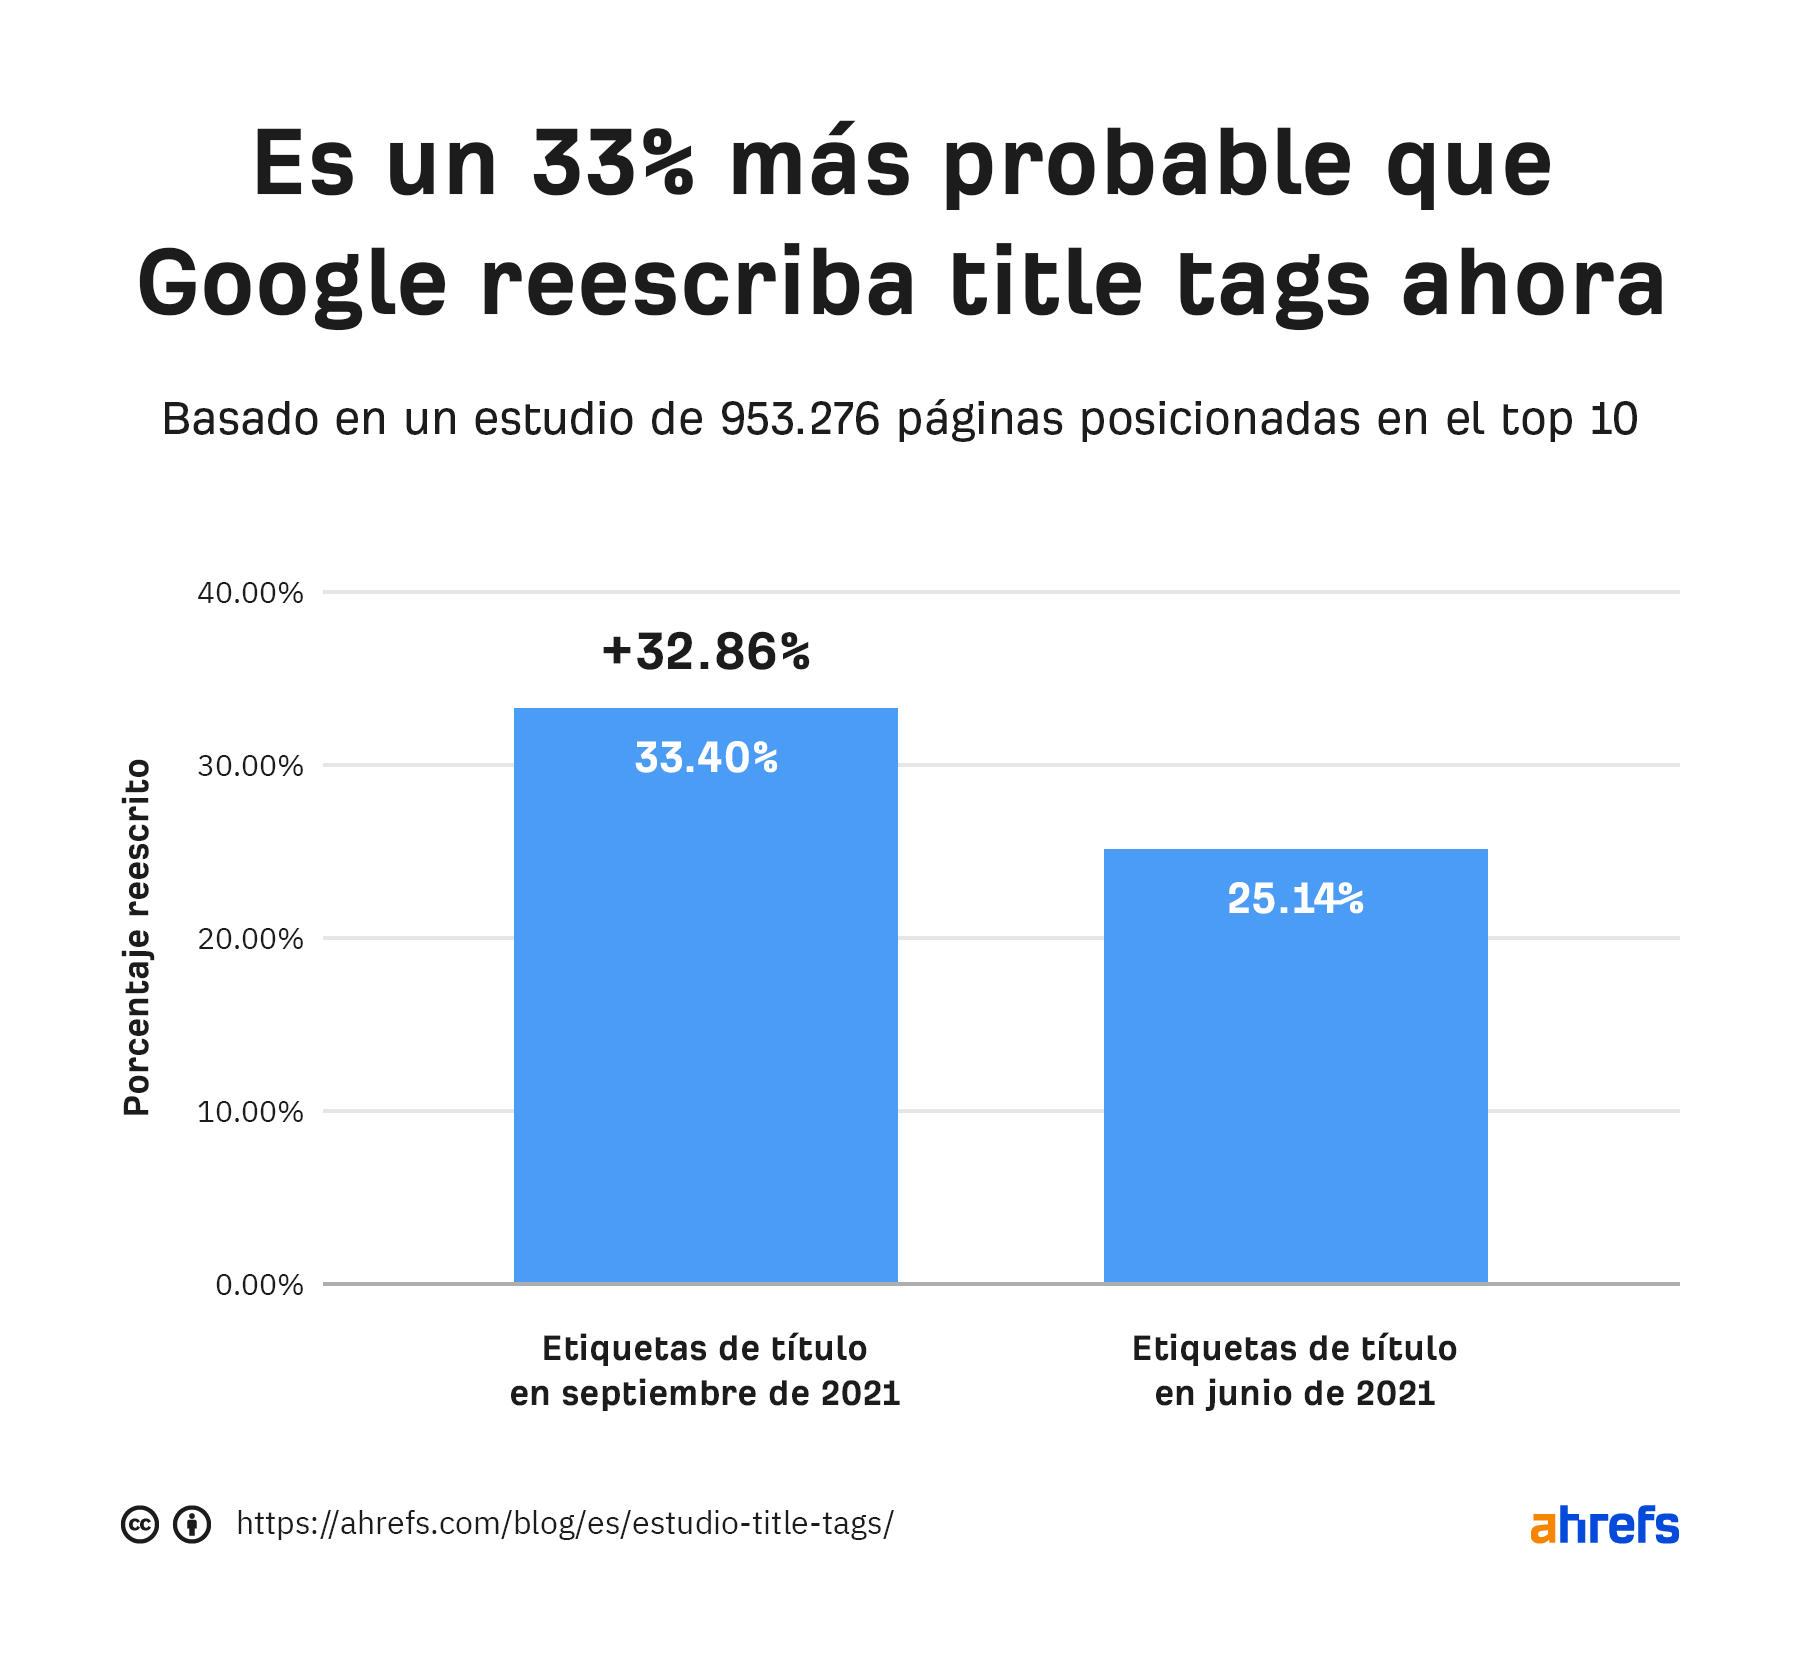 Google tenía más probabilidades de reescribir títulos en septiembre de 2021 que en junio de 2021